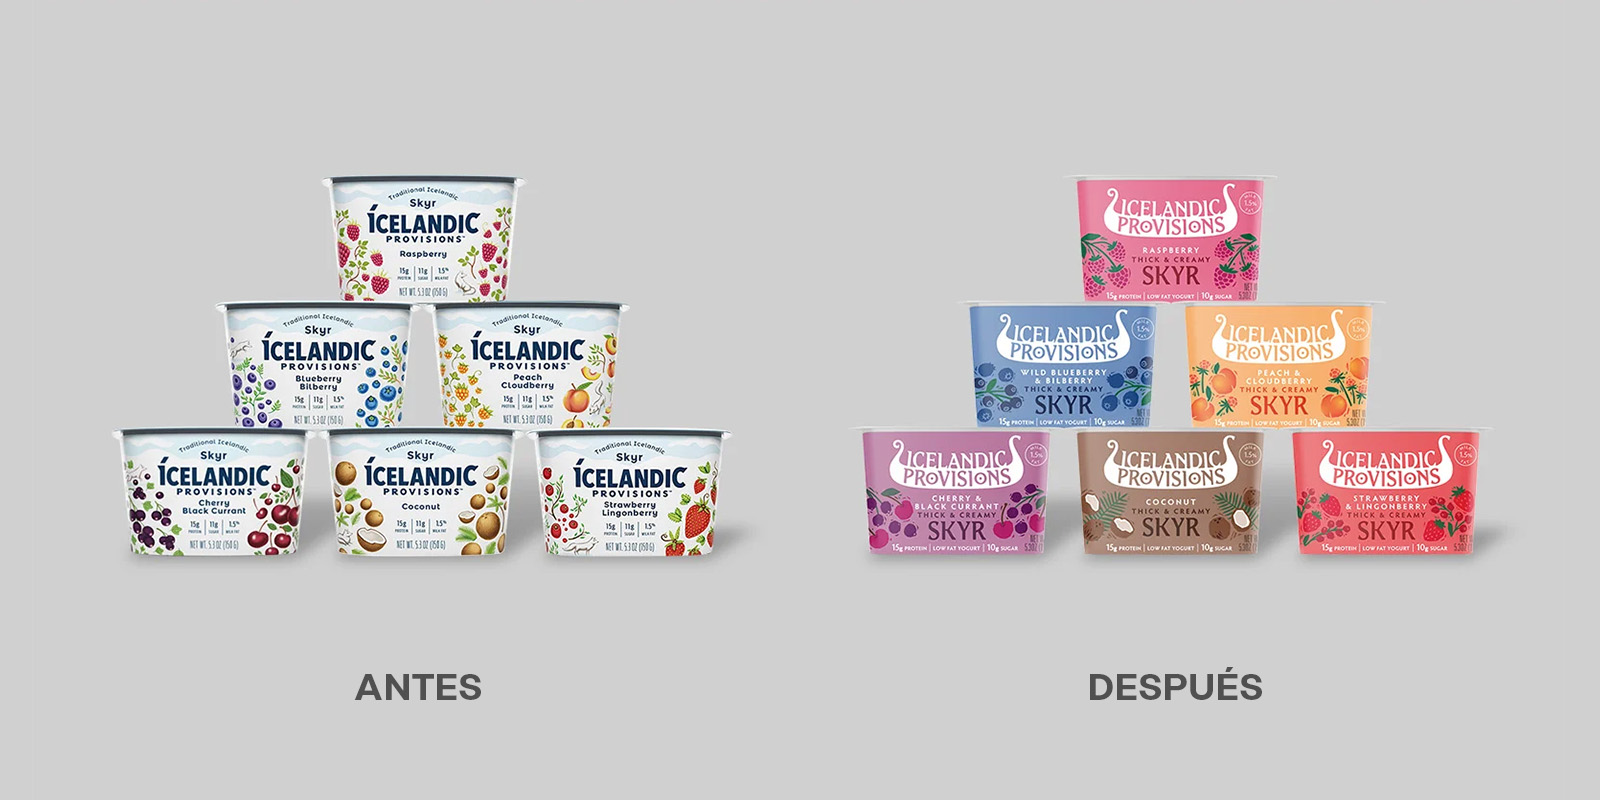 Antes y después del rediseño de packaging y logo del yogurt Icelandic Provisions. El nuevo envase muestra un logo con más personalidad, colores que identifican los sabores con más claridad y nuevas ilustraciones.